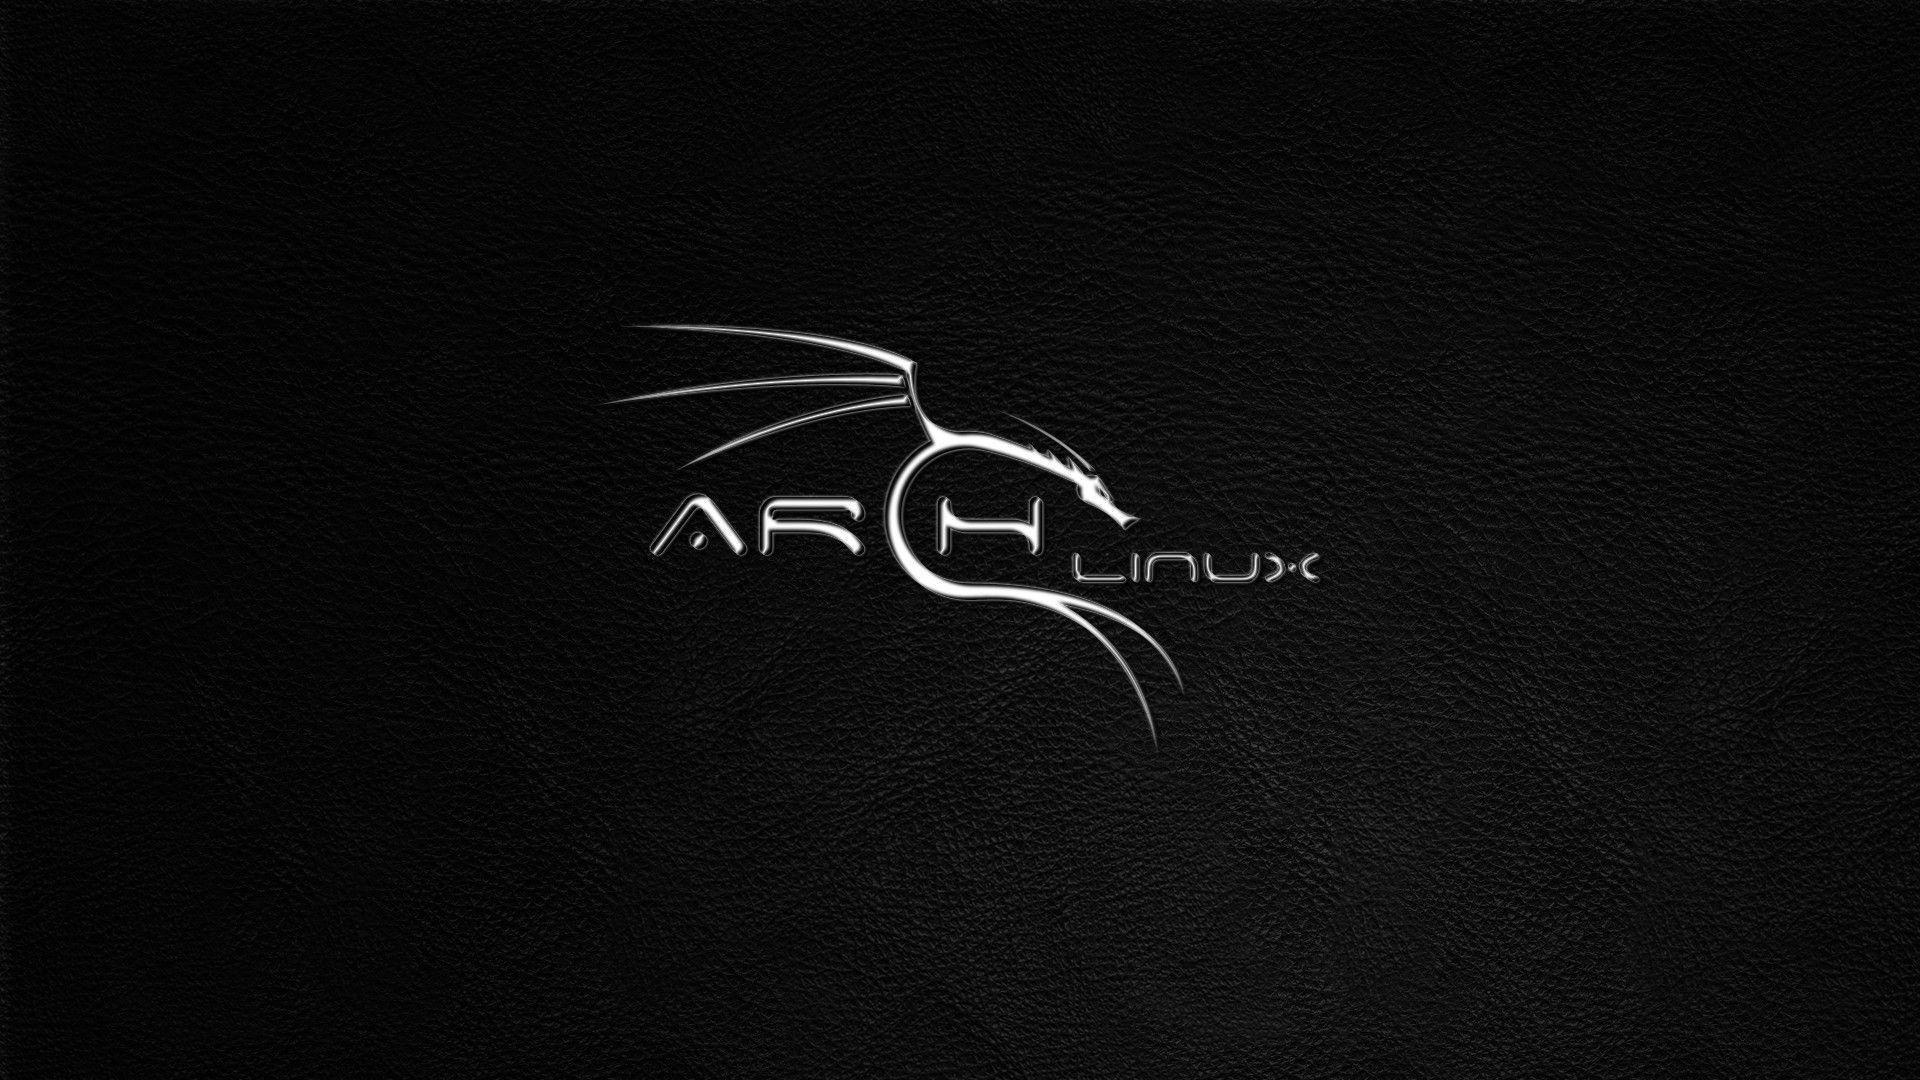 black arch linux